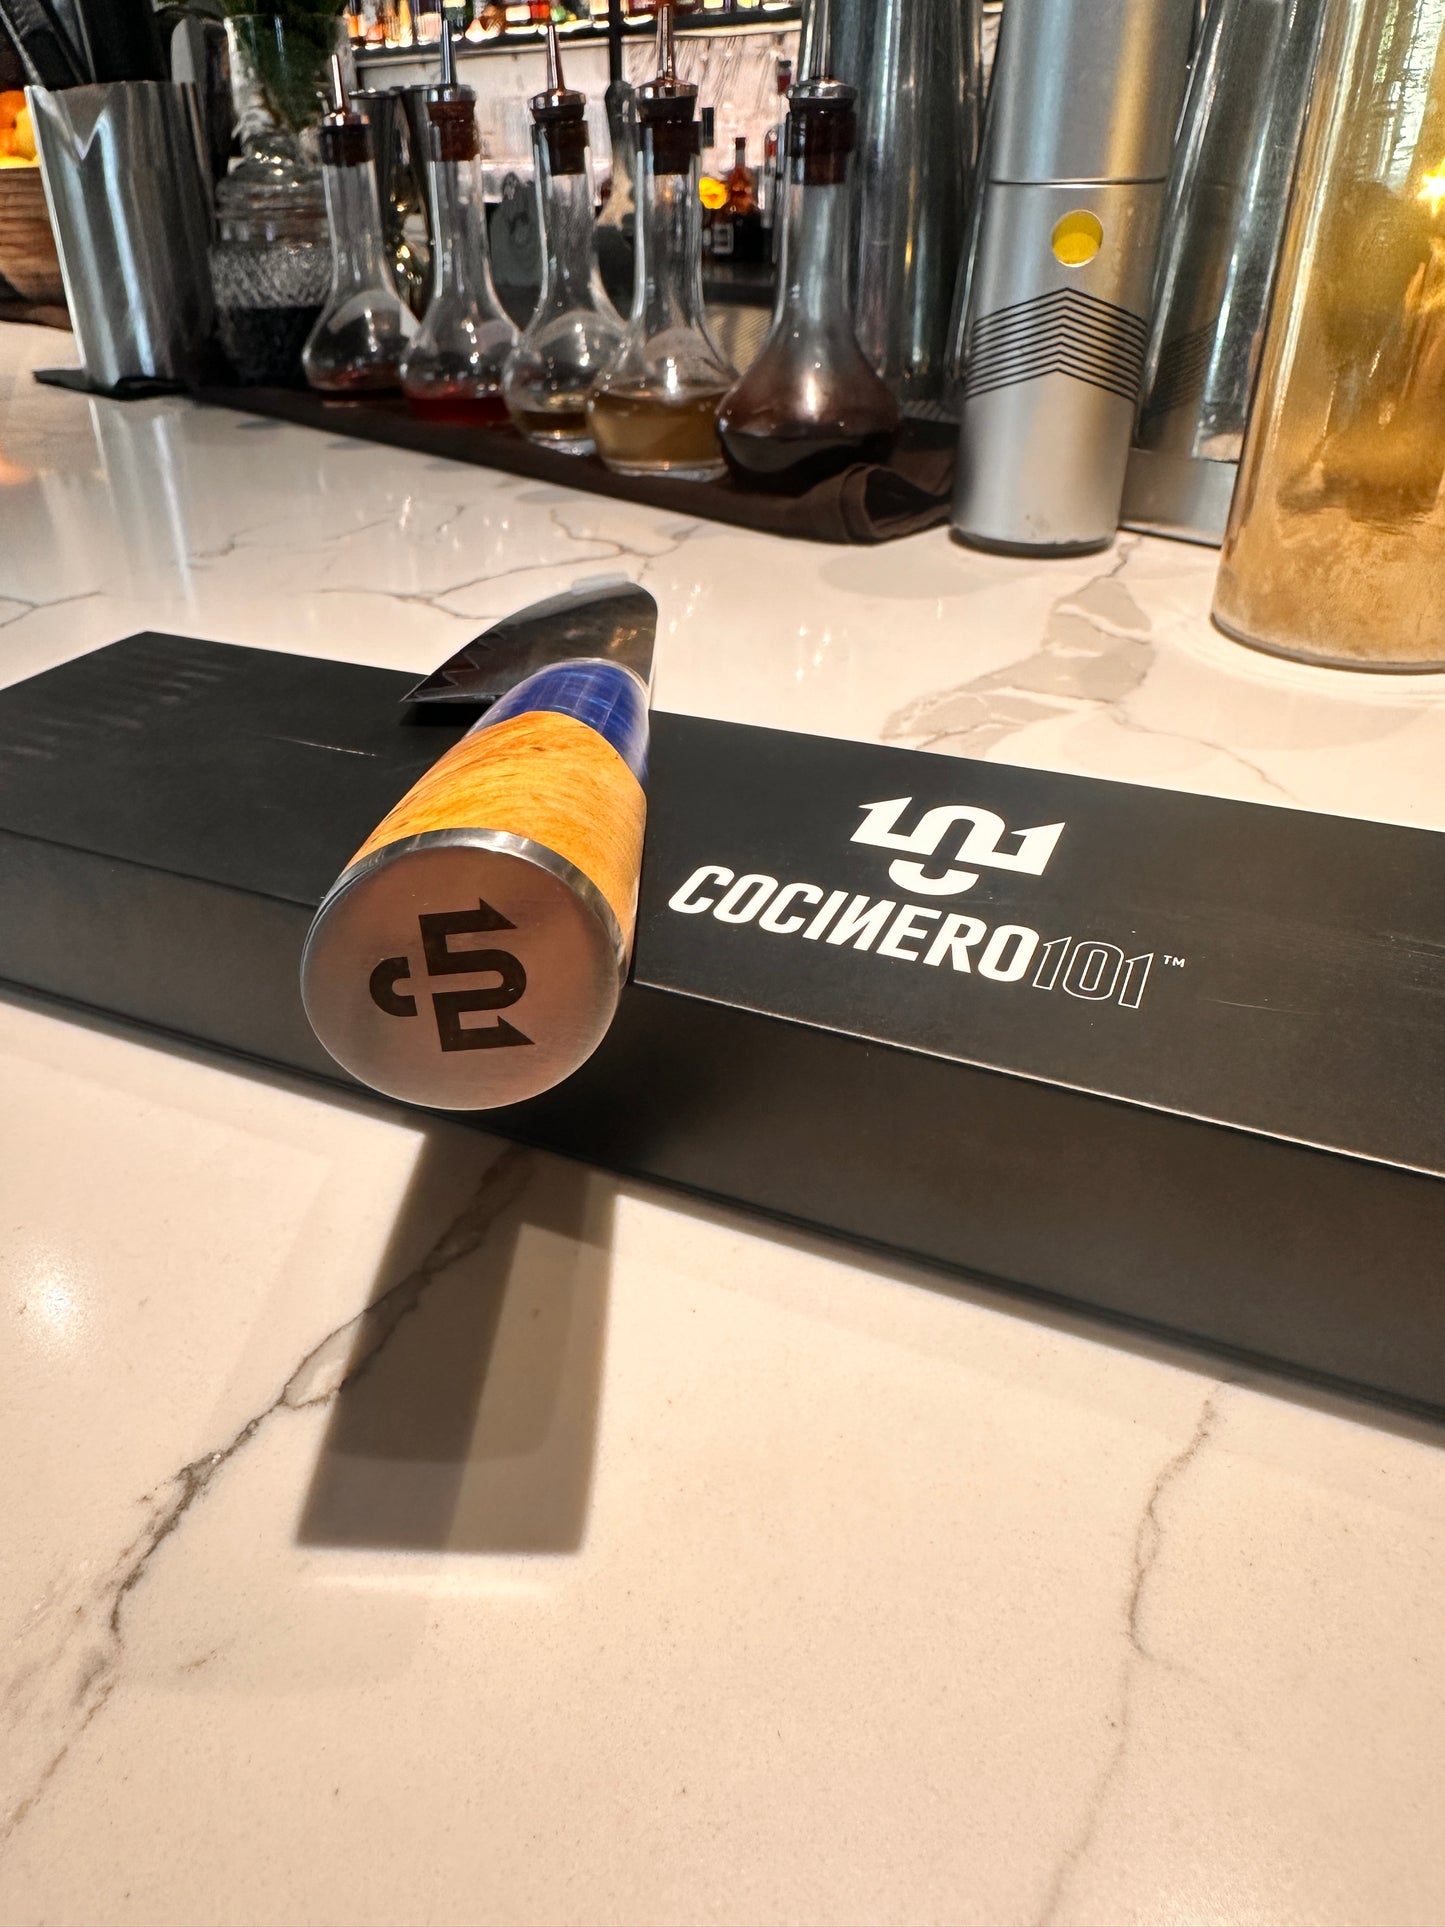 Cocinero101™ Chef Knife